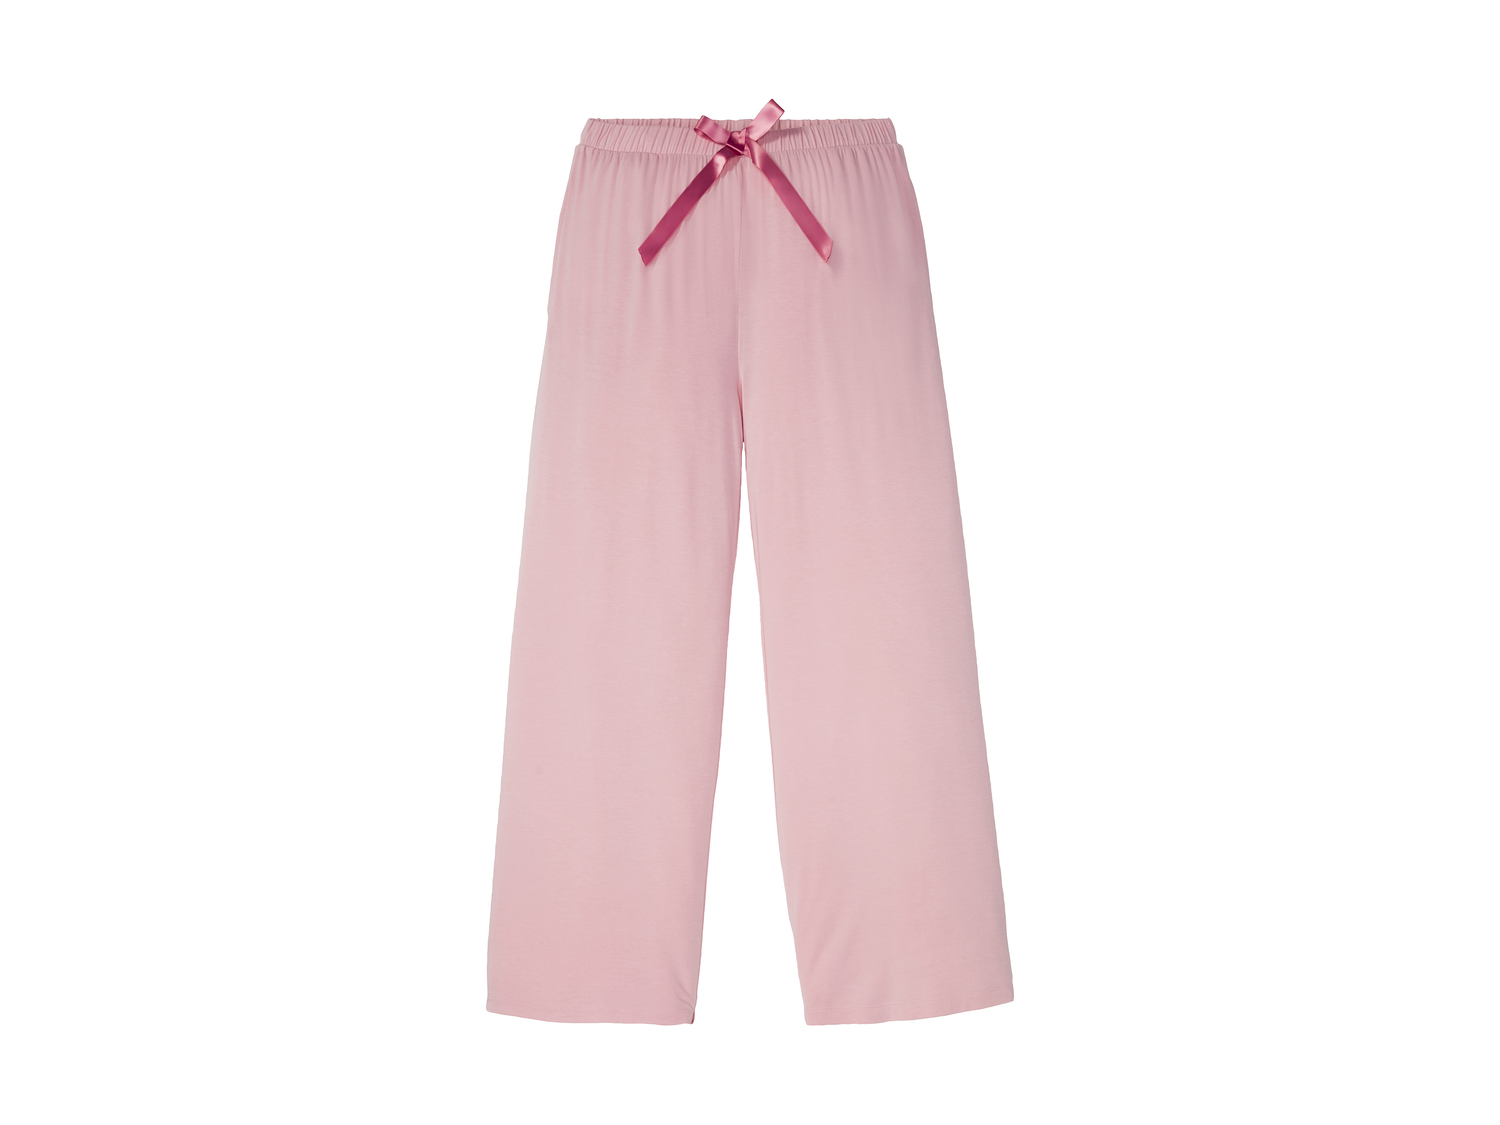 Pyjama femme , le prix 9.99 € 
- Du S au XL selon modèle.
- Dos rallongé
- ...